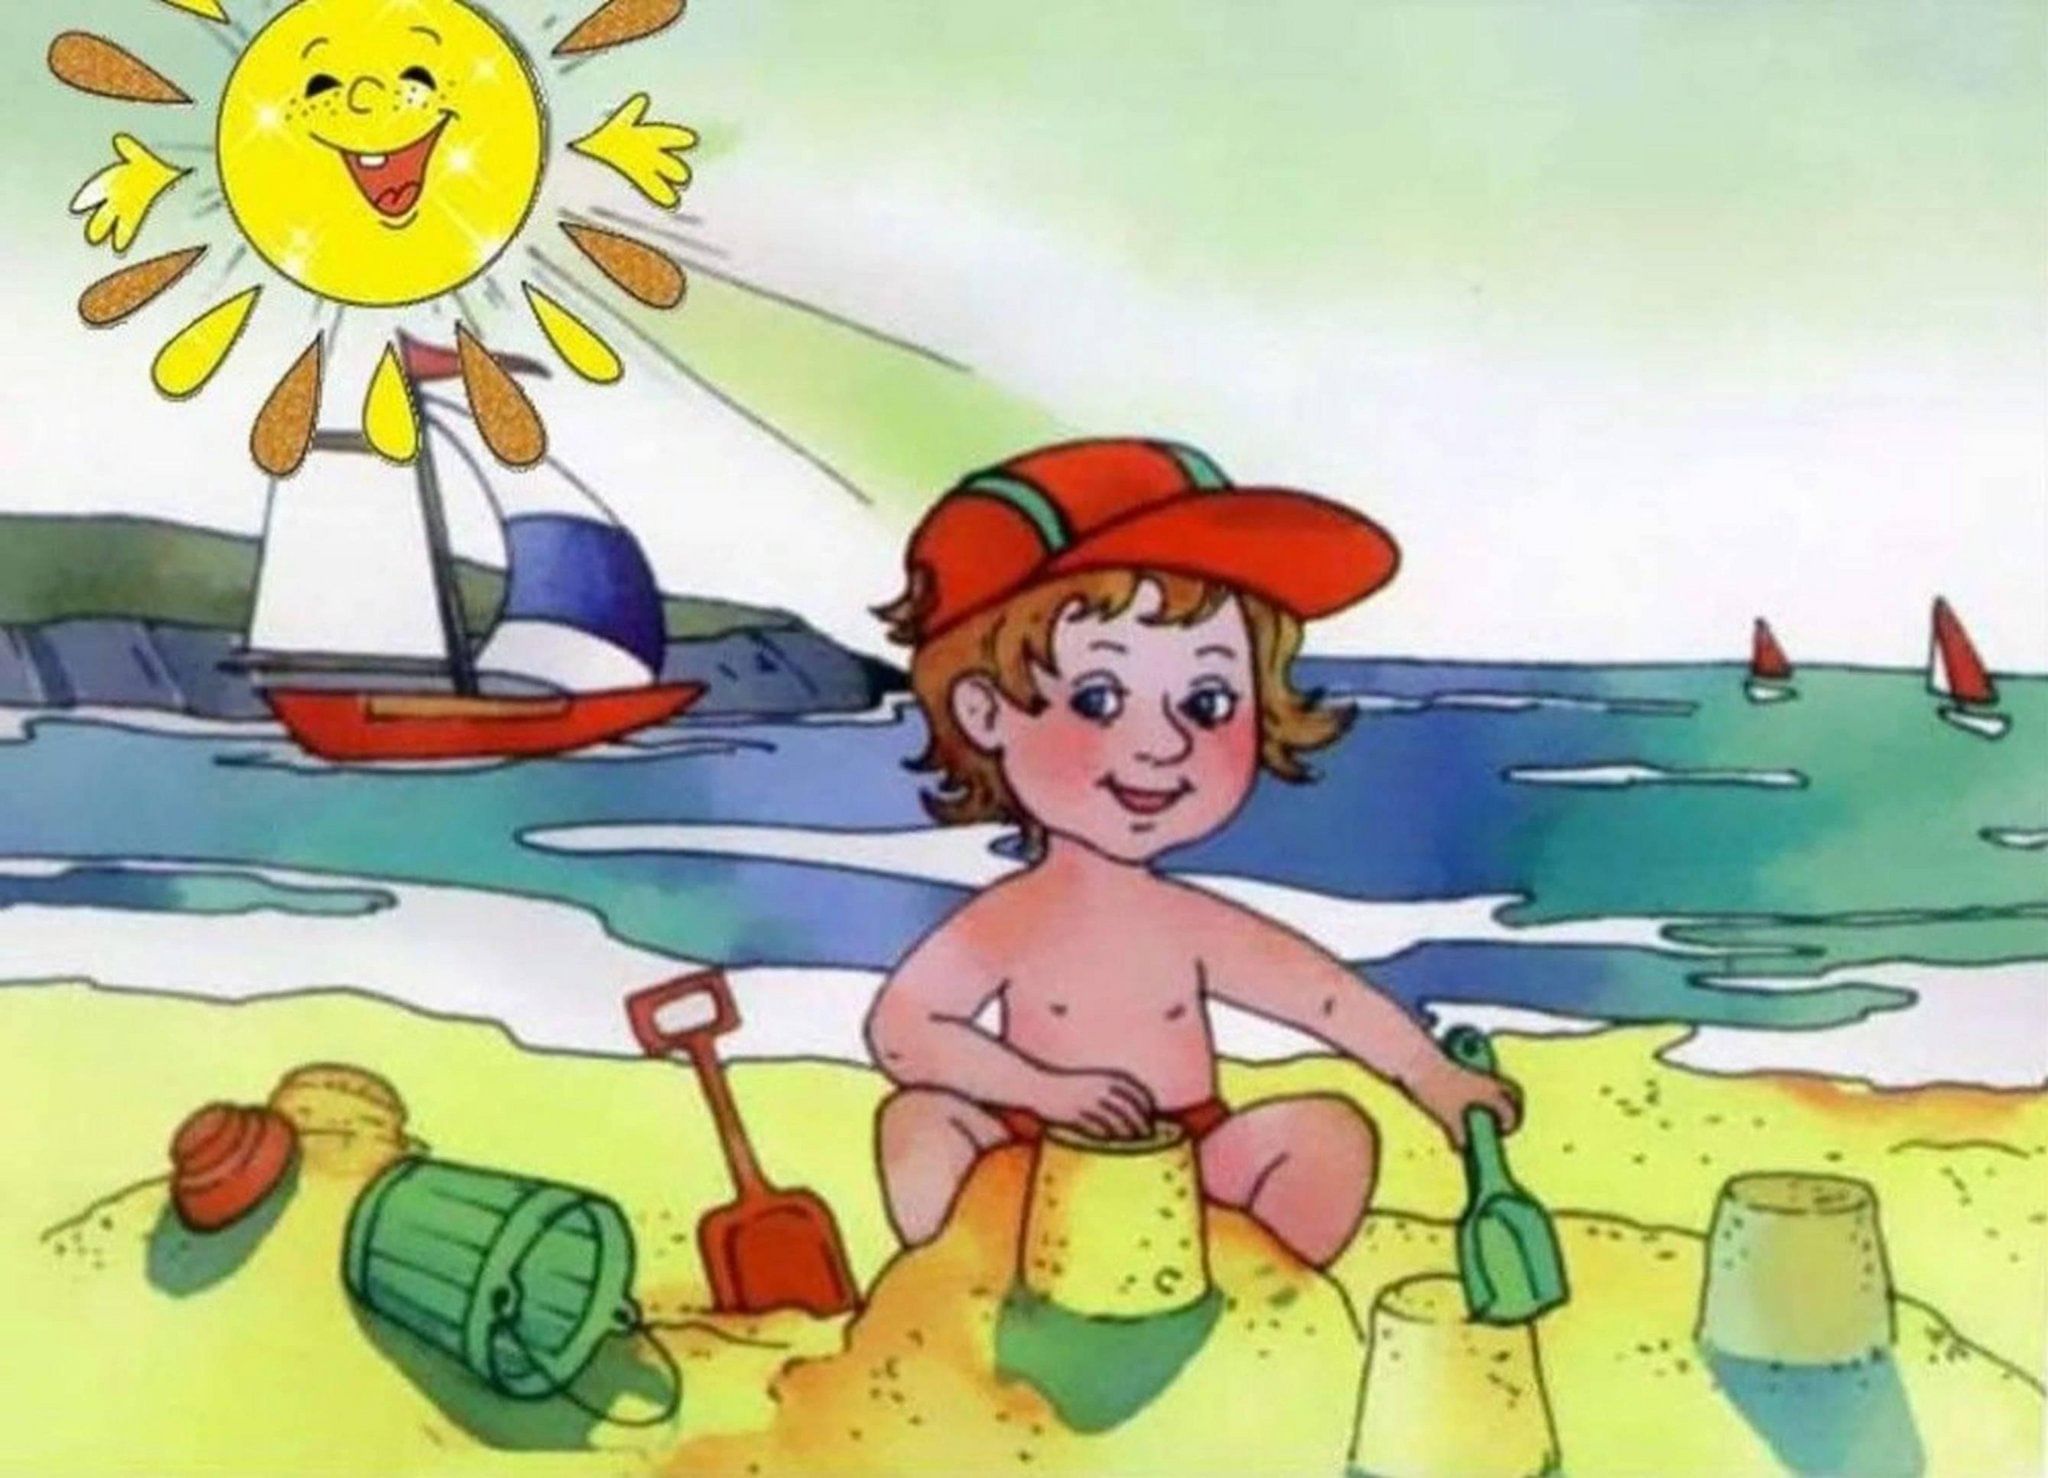 Скорей скорей купаться. Летний рисунок для детей. Лето рисунок для детей. Безопасность на водоемах летом для дошкольников. Лето для дошкольников.